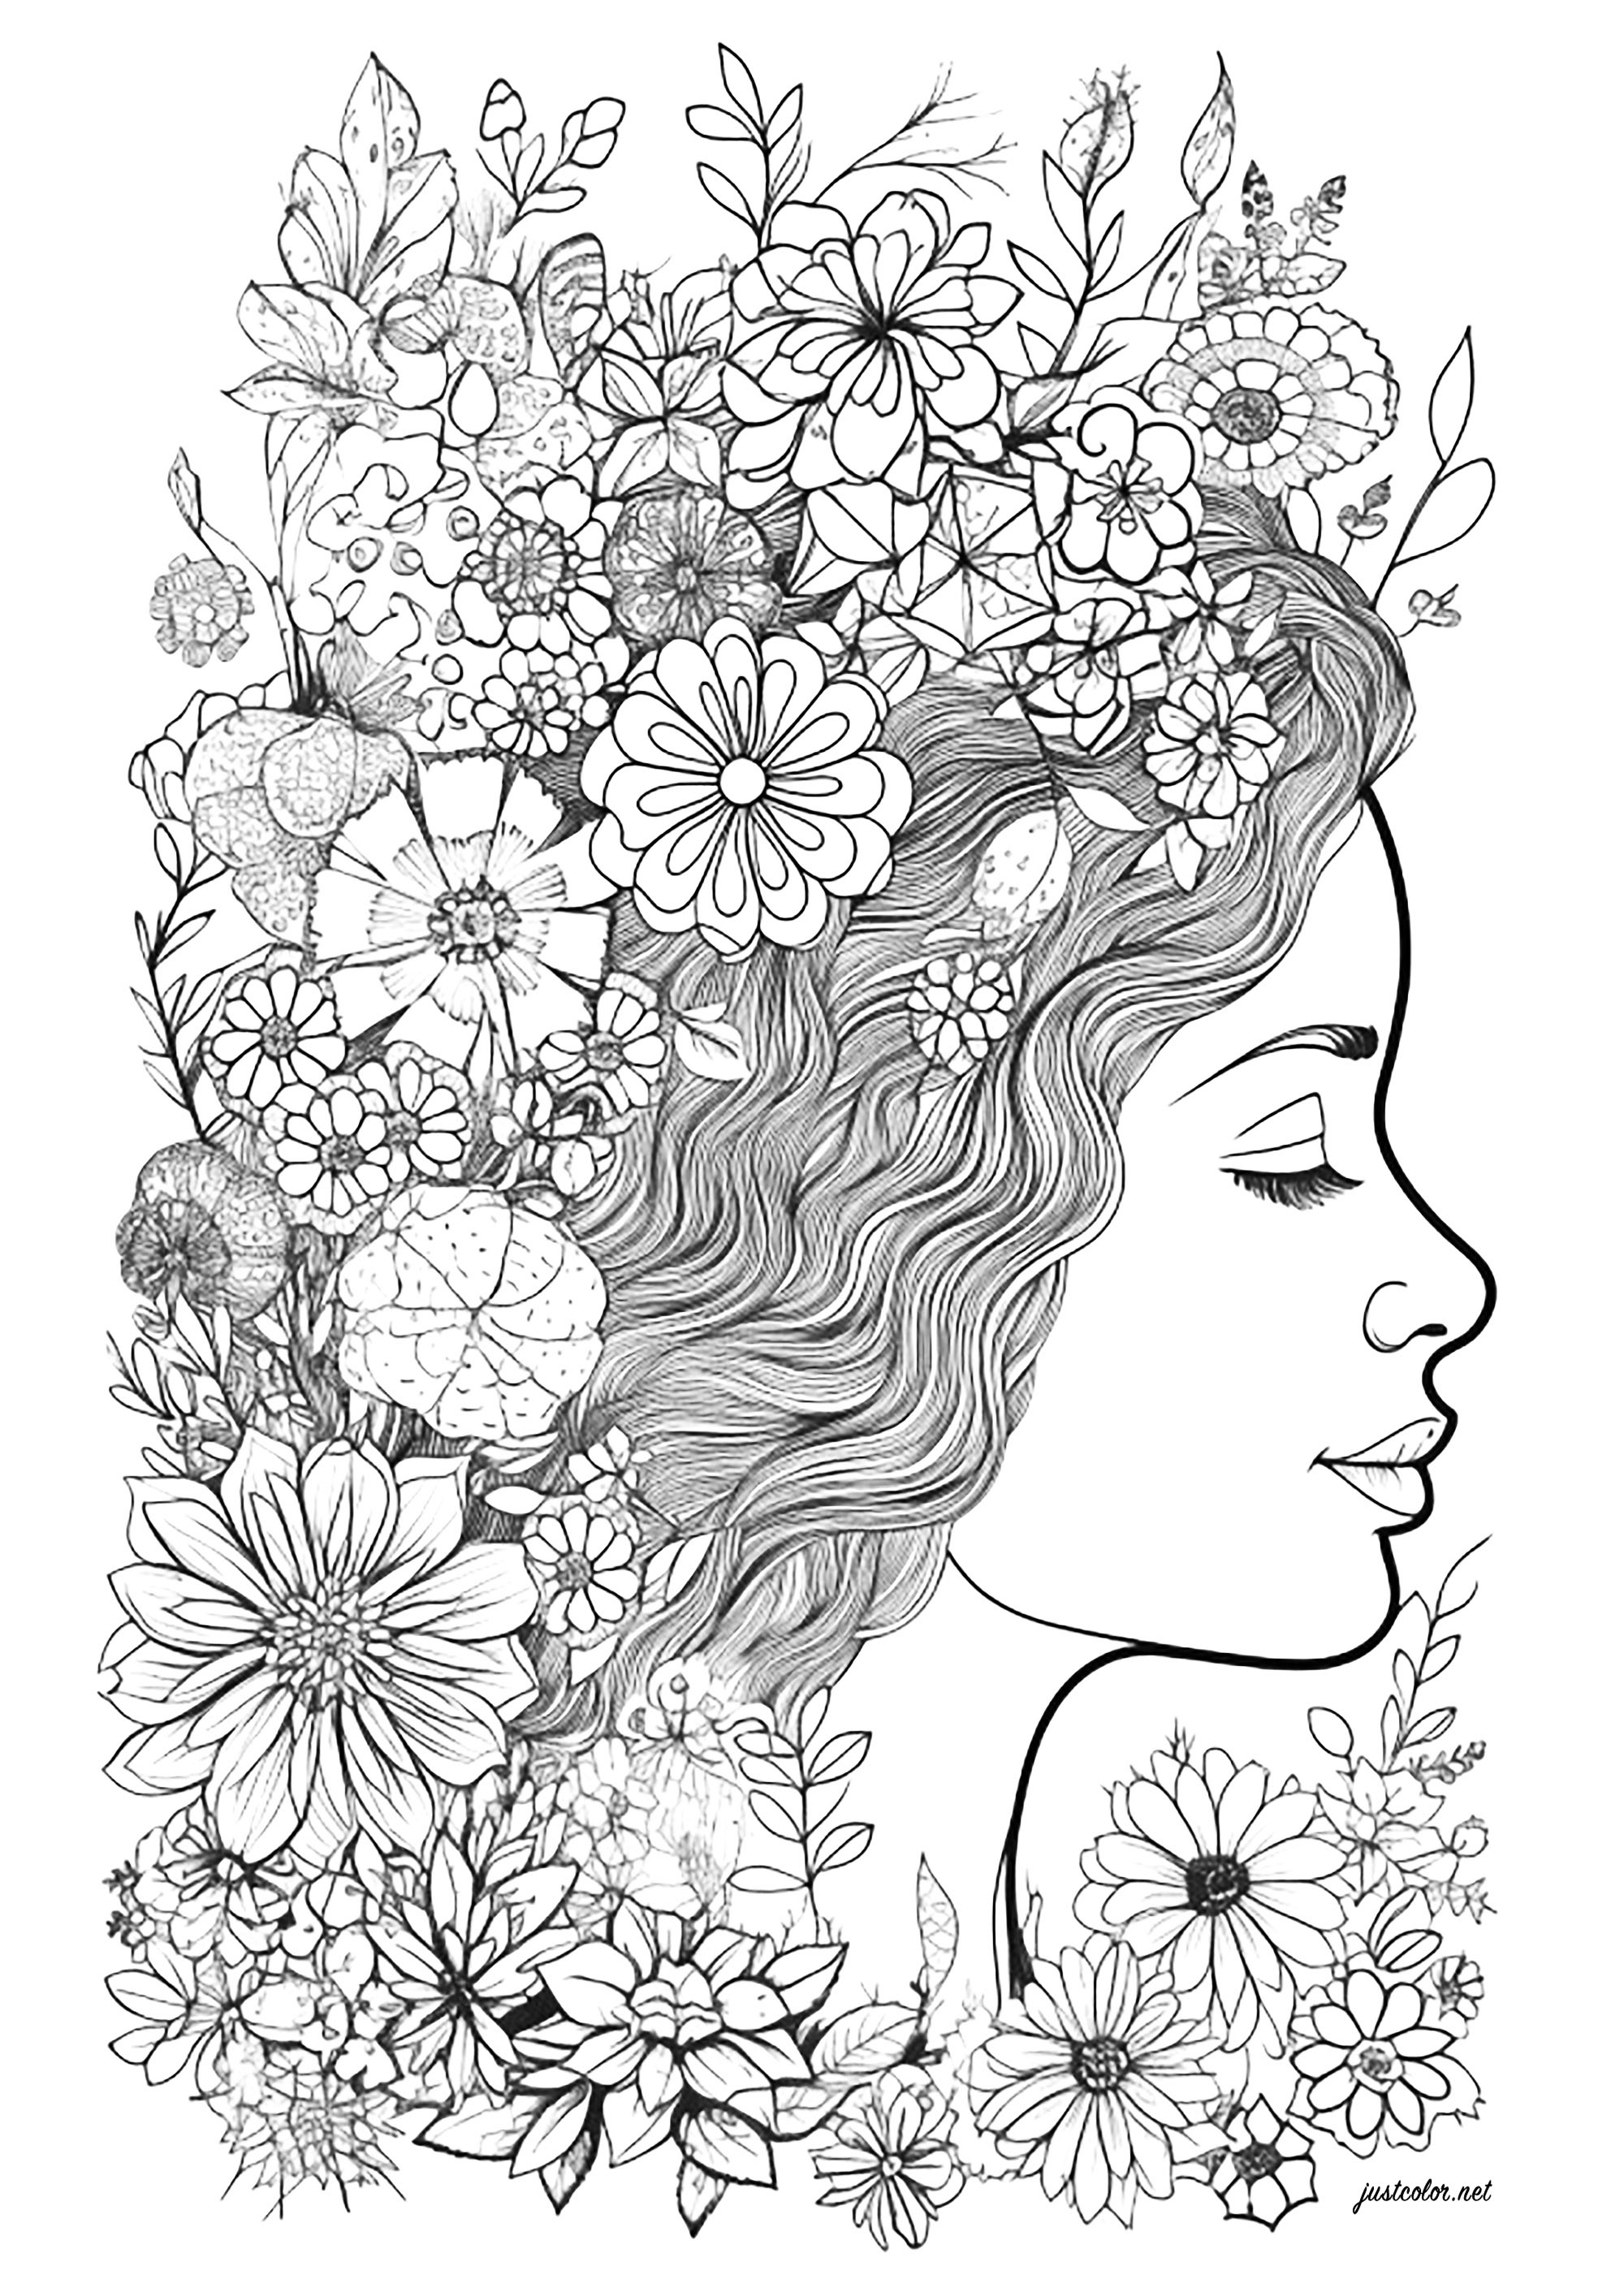 Gesicht einer Frau im Profil, umgeben von Blumen. Färbe all diese schönen Blumen im Haar dieser Frau